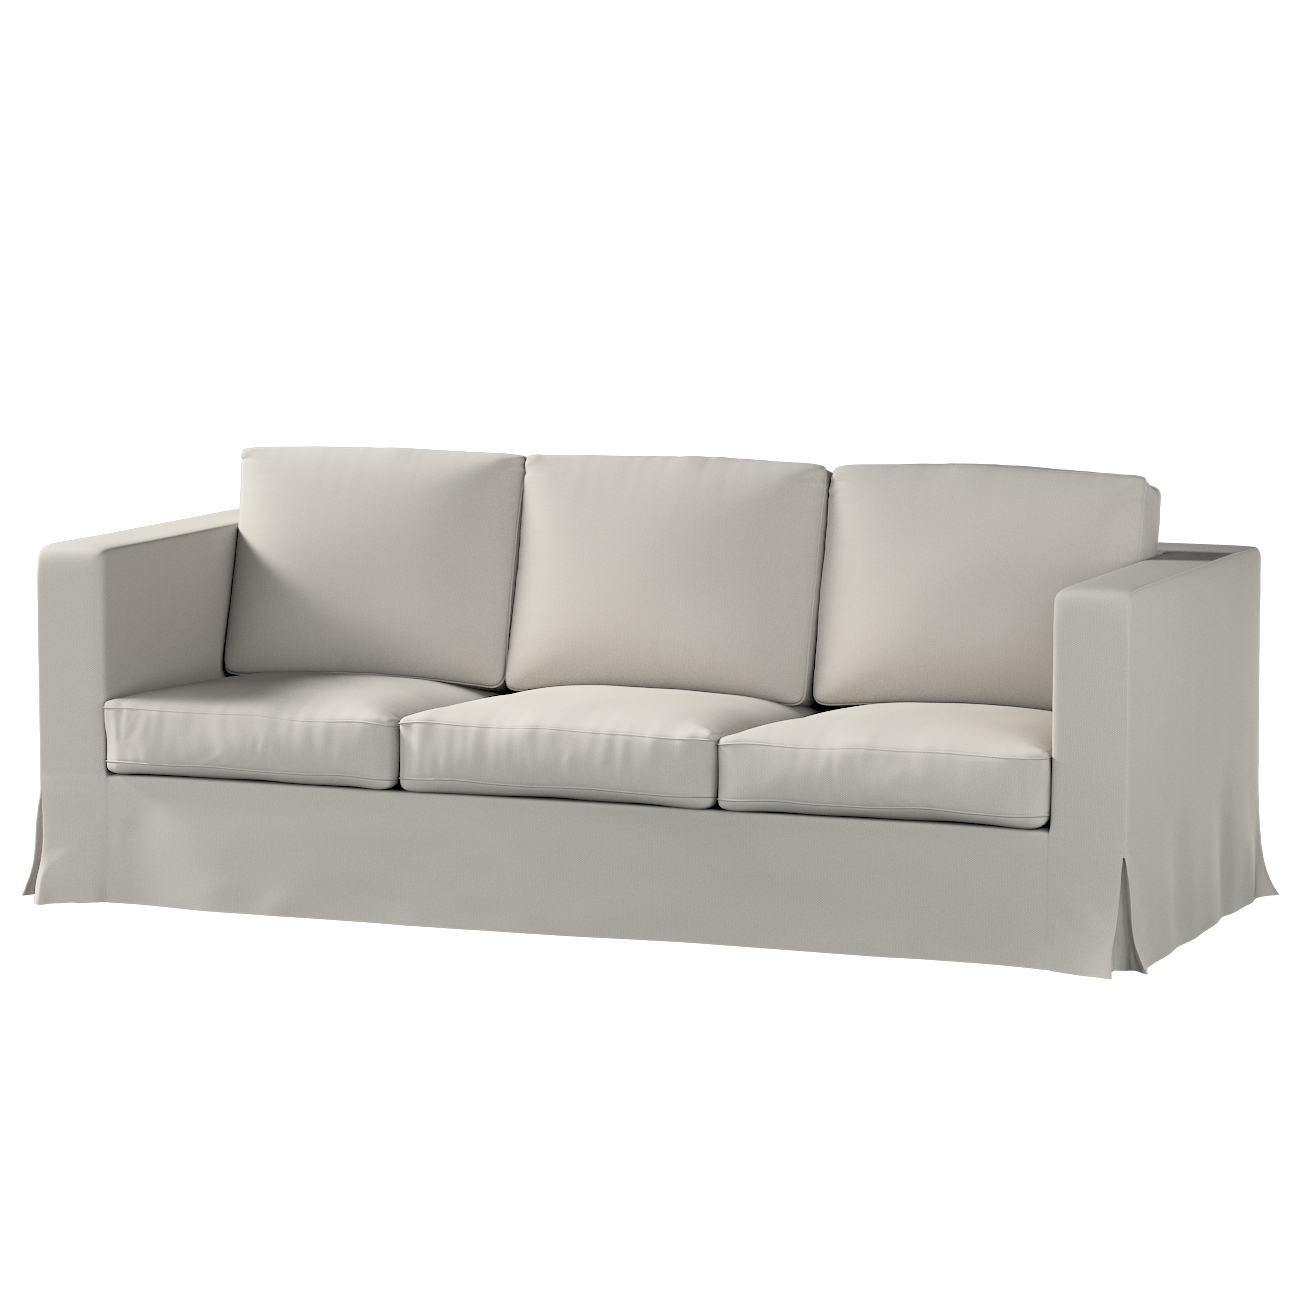 Bezug für Karlanda 3-Sitzer Sofa nicht ausklappbar, lang, grau, Bezug für S günstig online kaufen